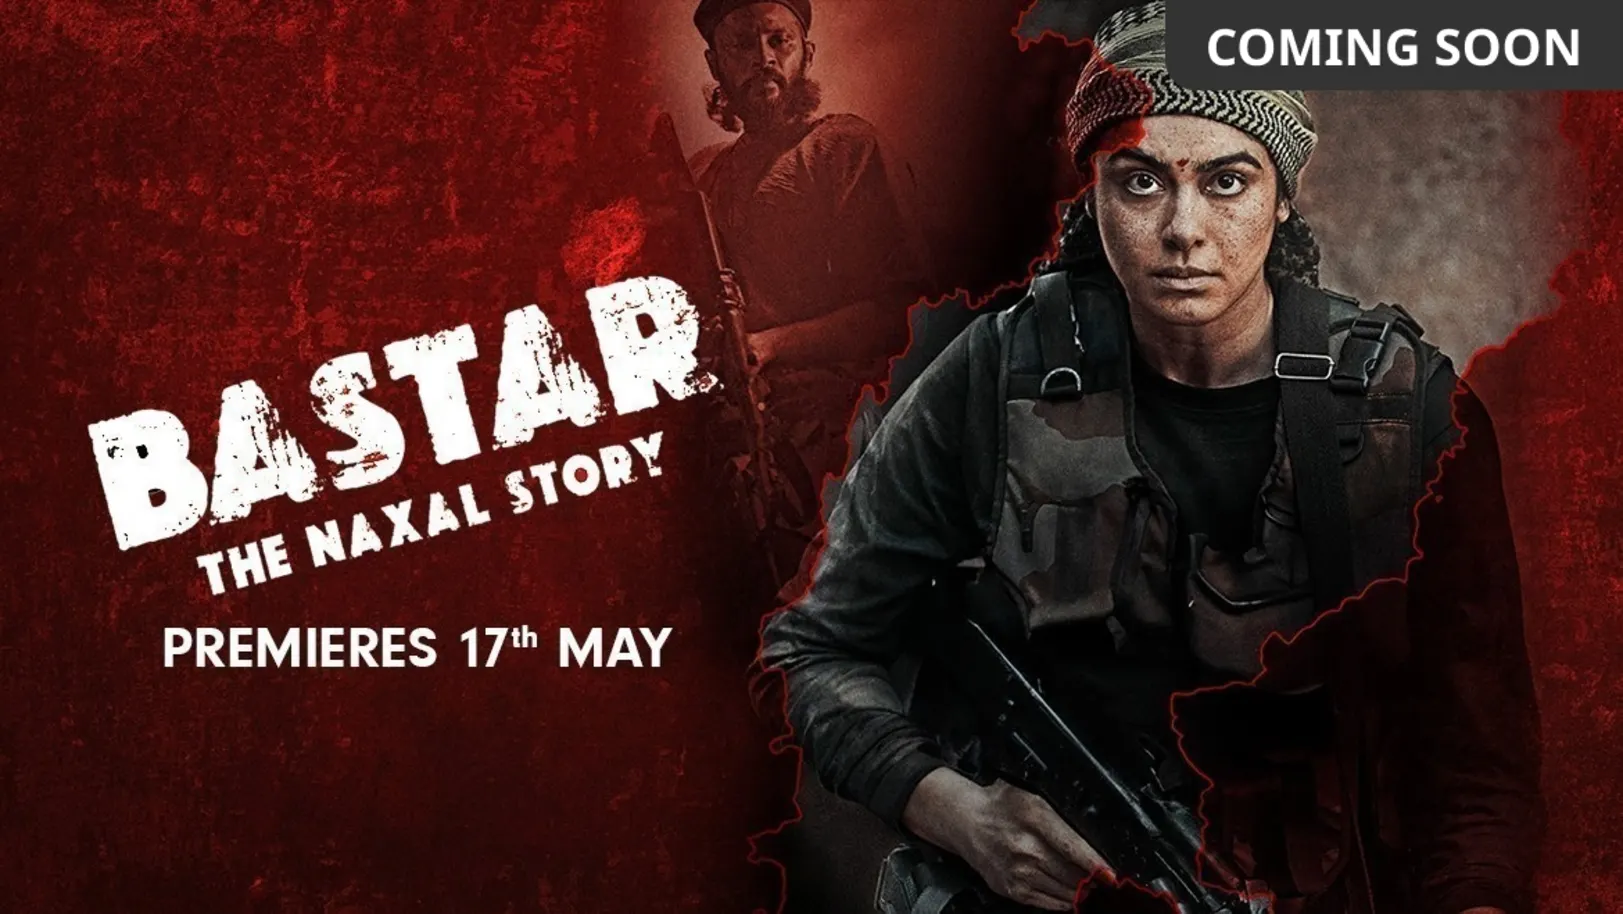 Bastar: The Naxal Story Movie